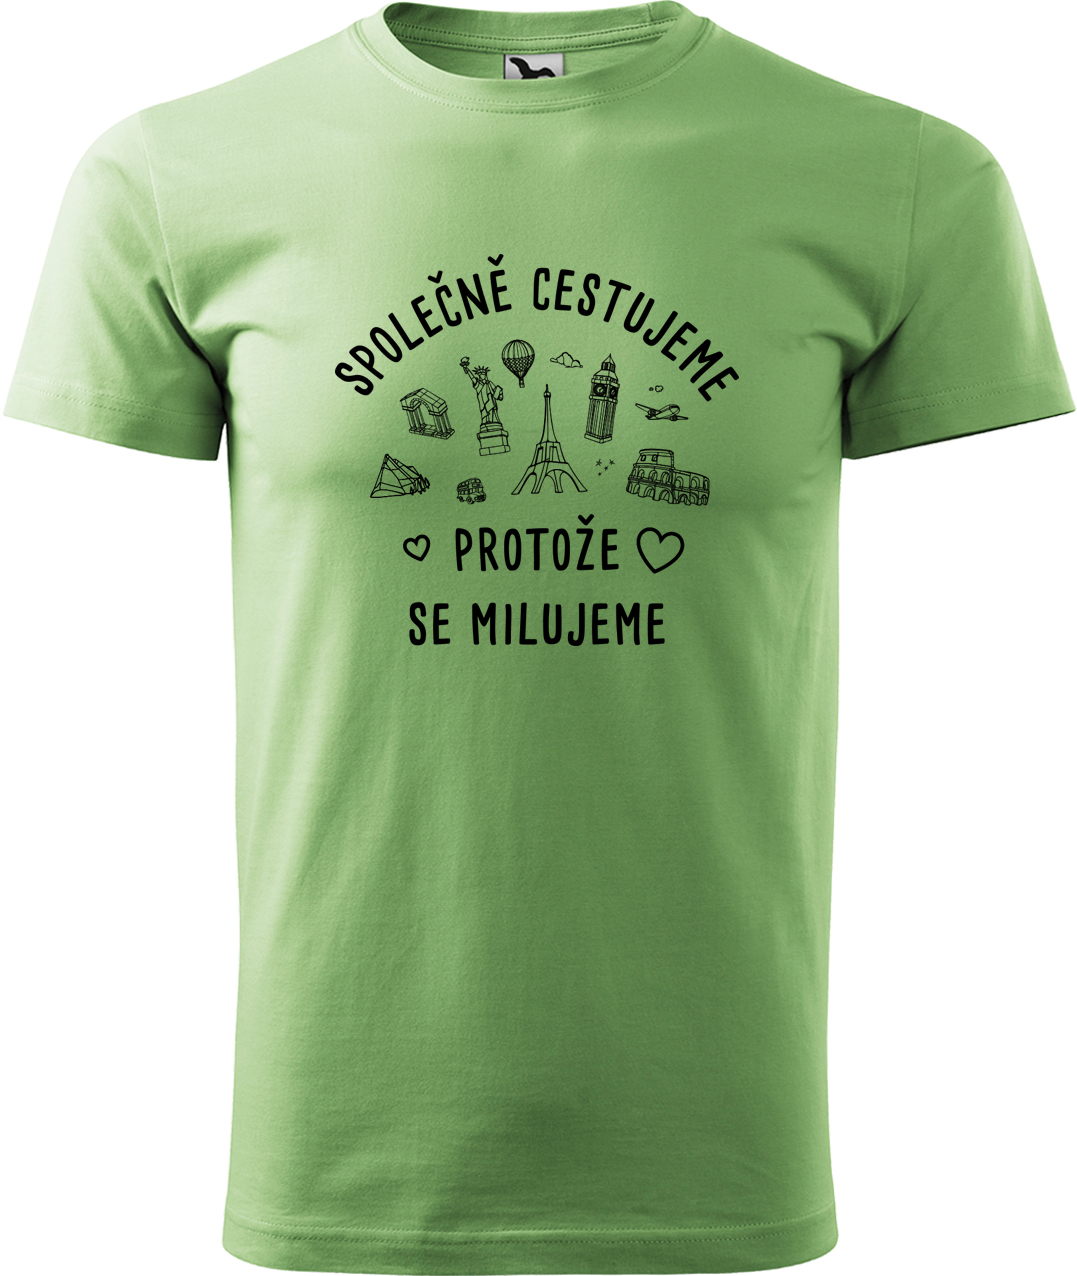 Pánské cestovatelské tričko - Společně cestujeme protože se milujeme Velikost: XL, Barva: Trávově zelená (39), Střih: pánský